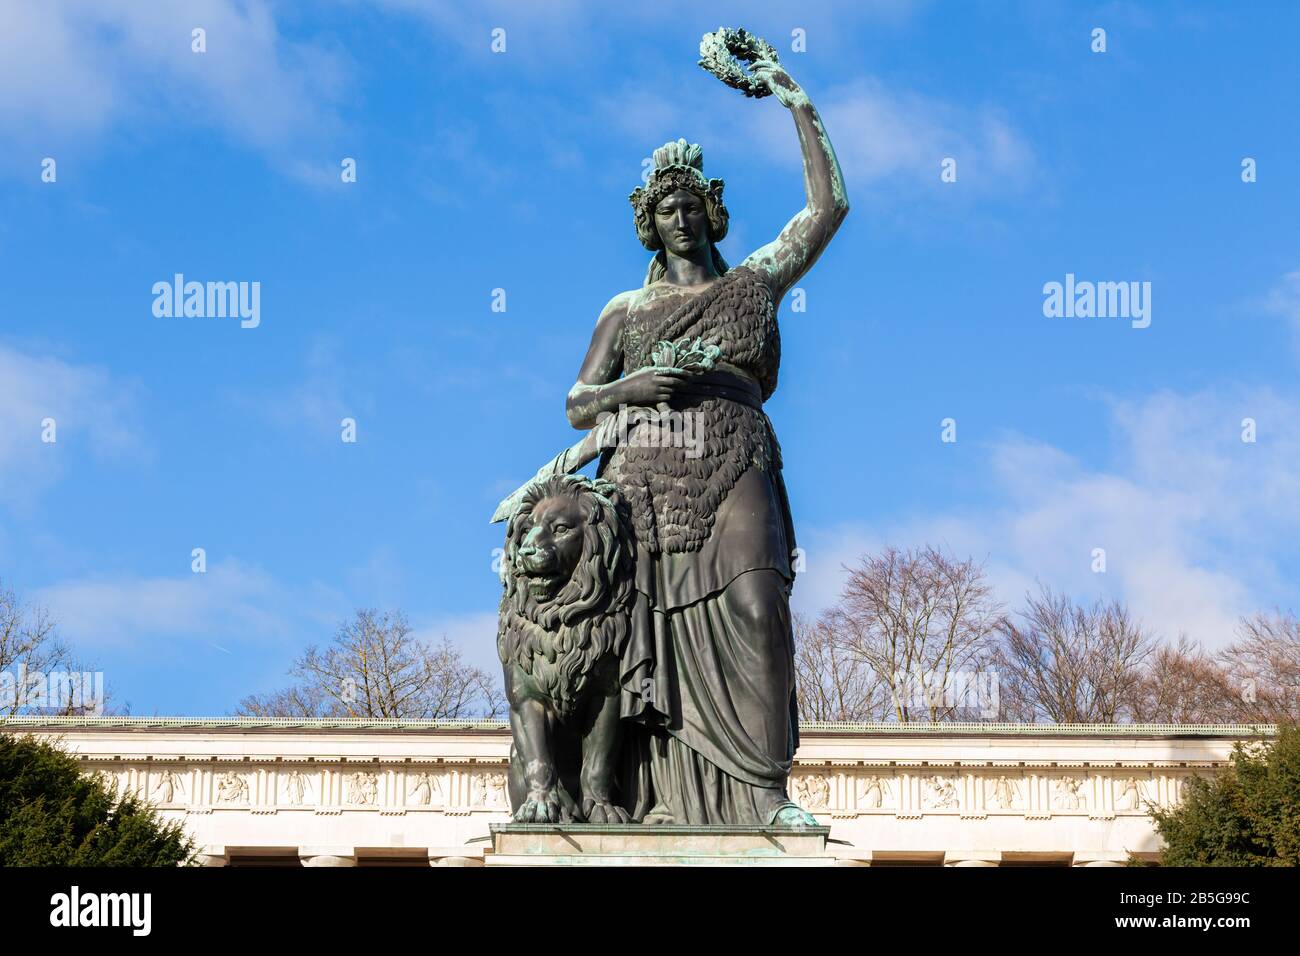 Près de la statue de la Bavière. Les deux figures - lion et femme - sont des représentations de la patrie bavaroise. Lieu touristique populaire. Espace de copie. Banque D'Images